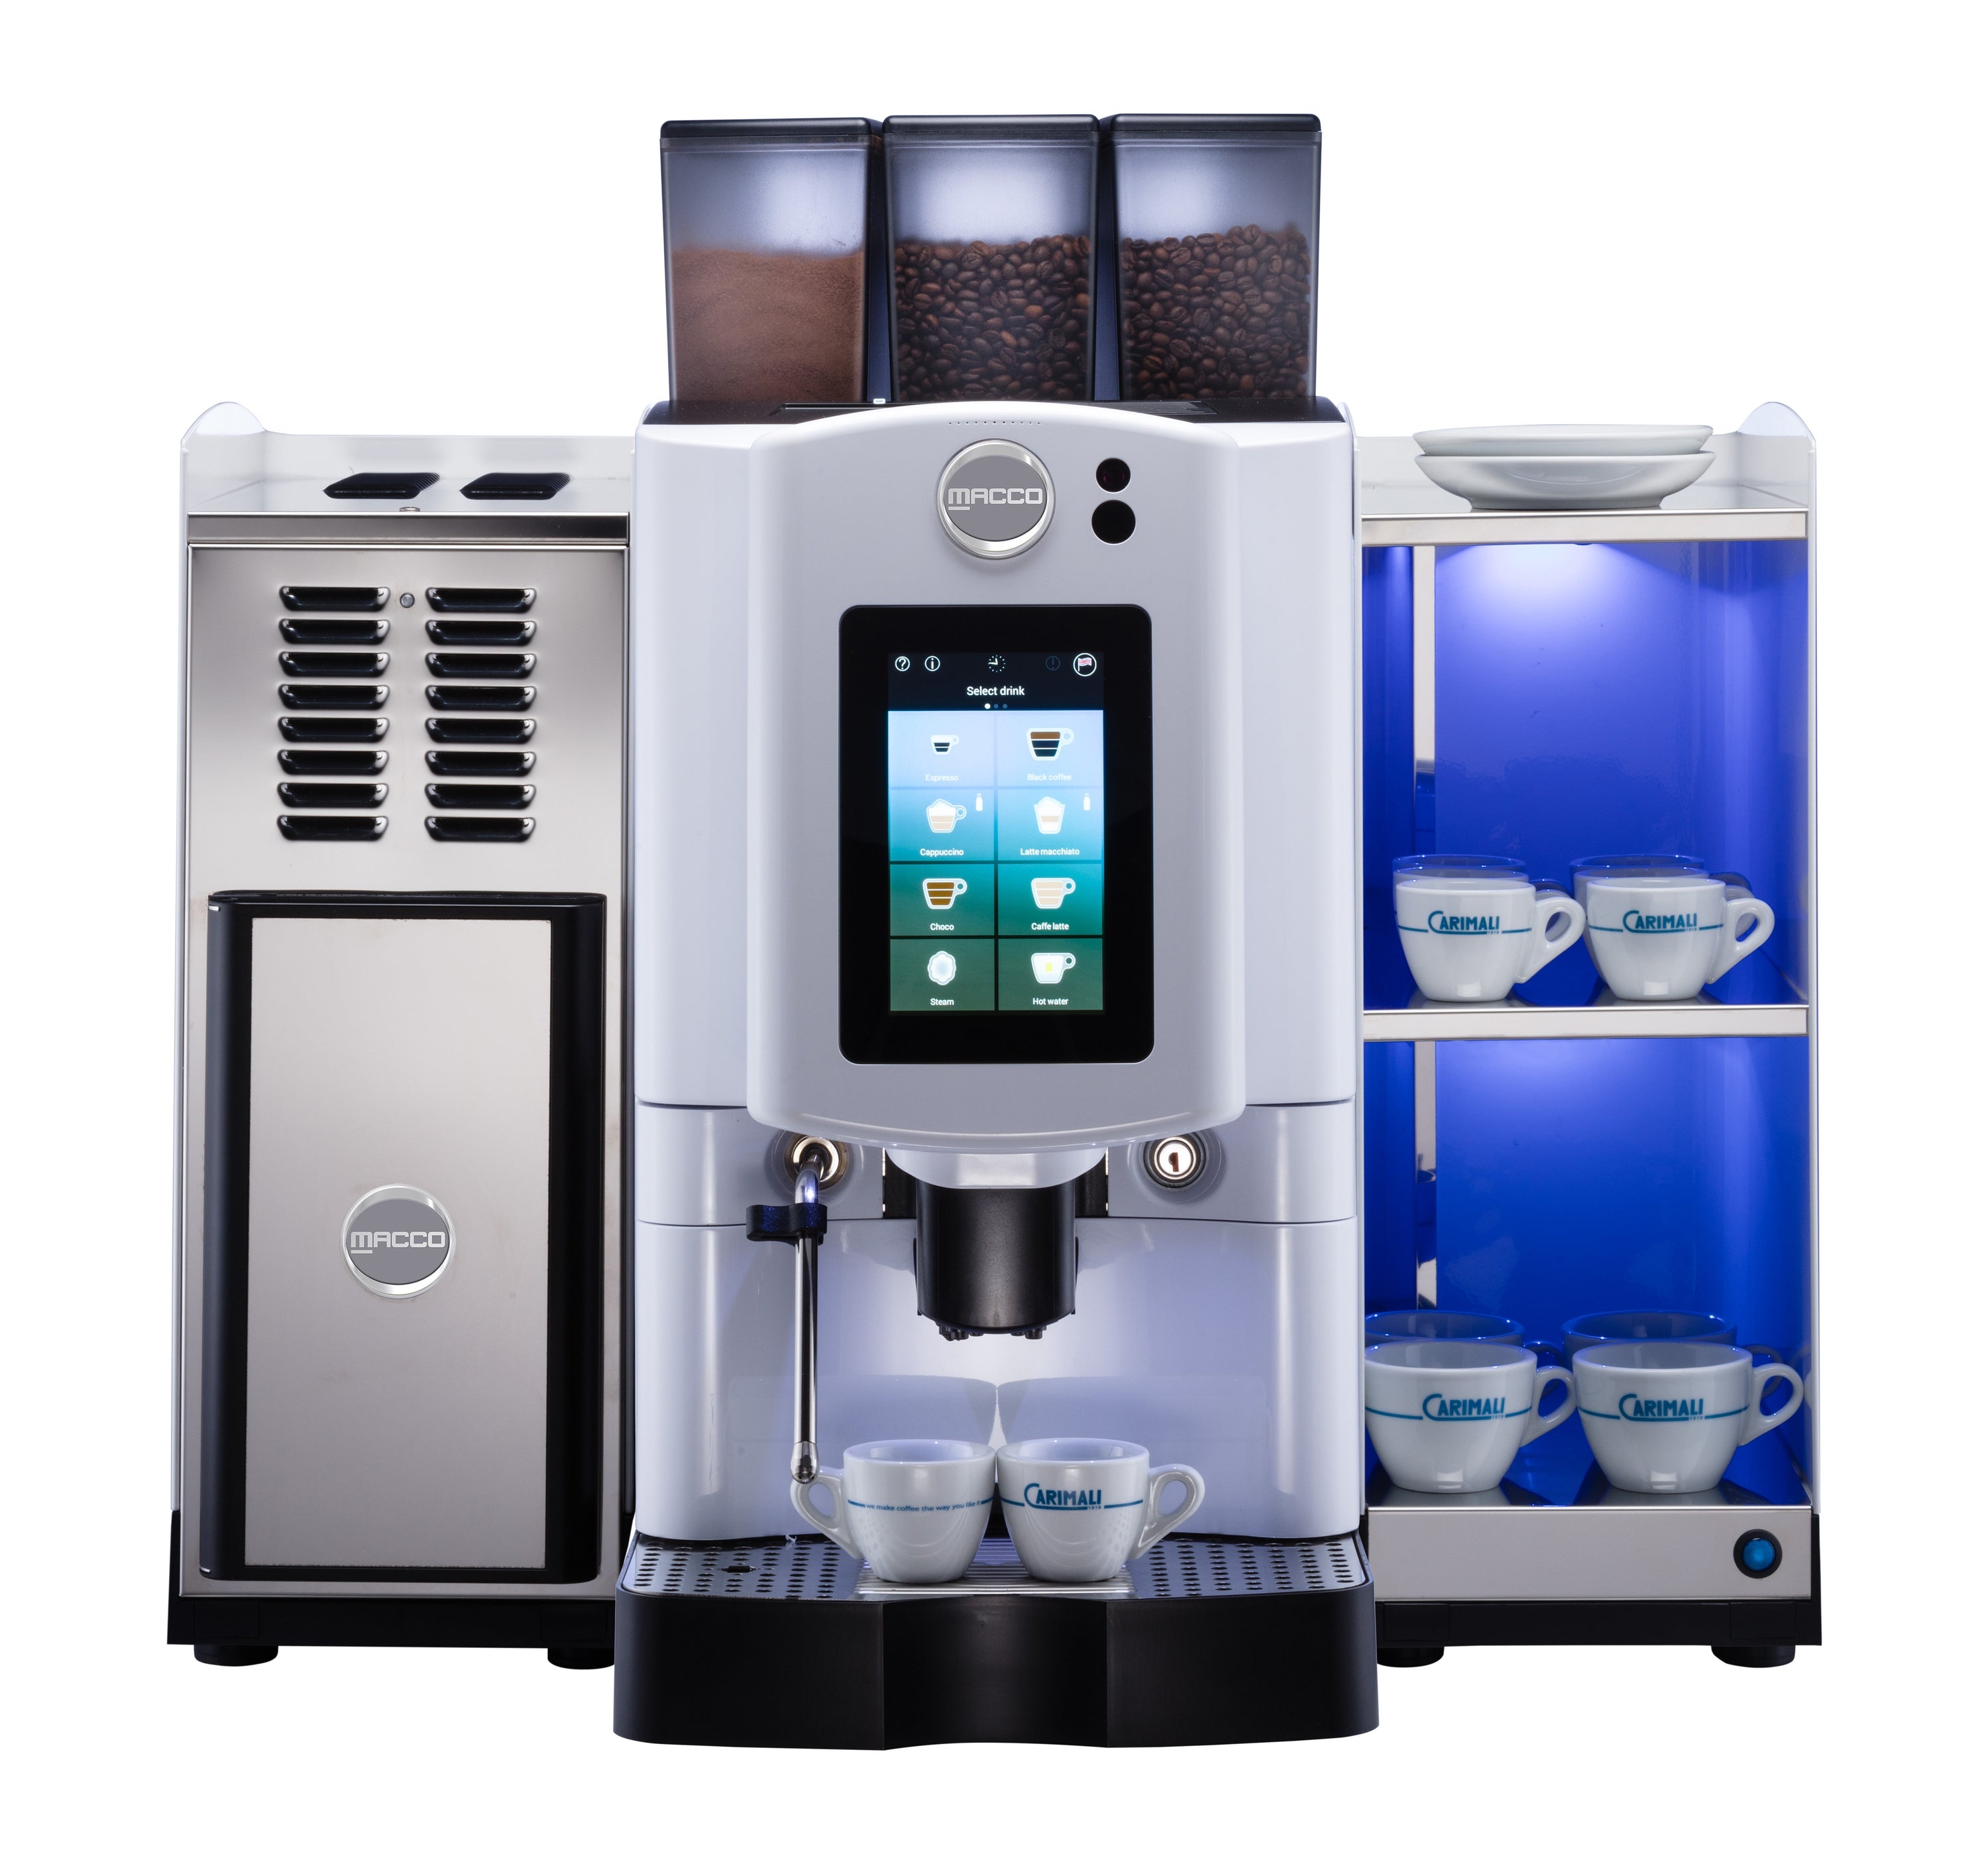 Macco MX-4 Soft Touch Fresh Milk Bean to Cup Coffee Machine